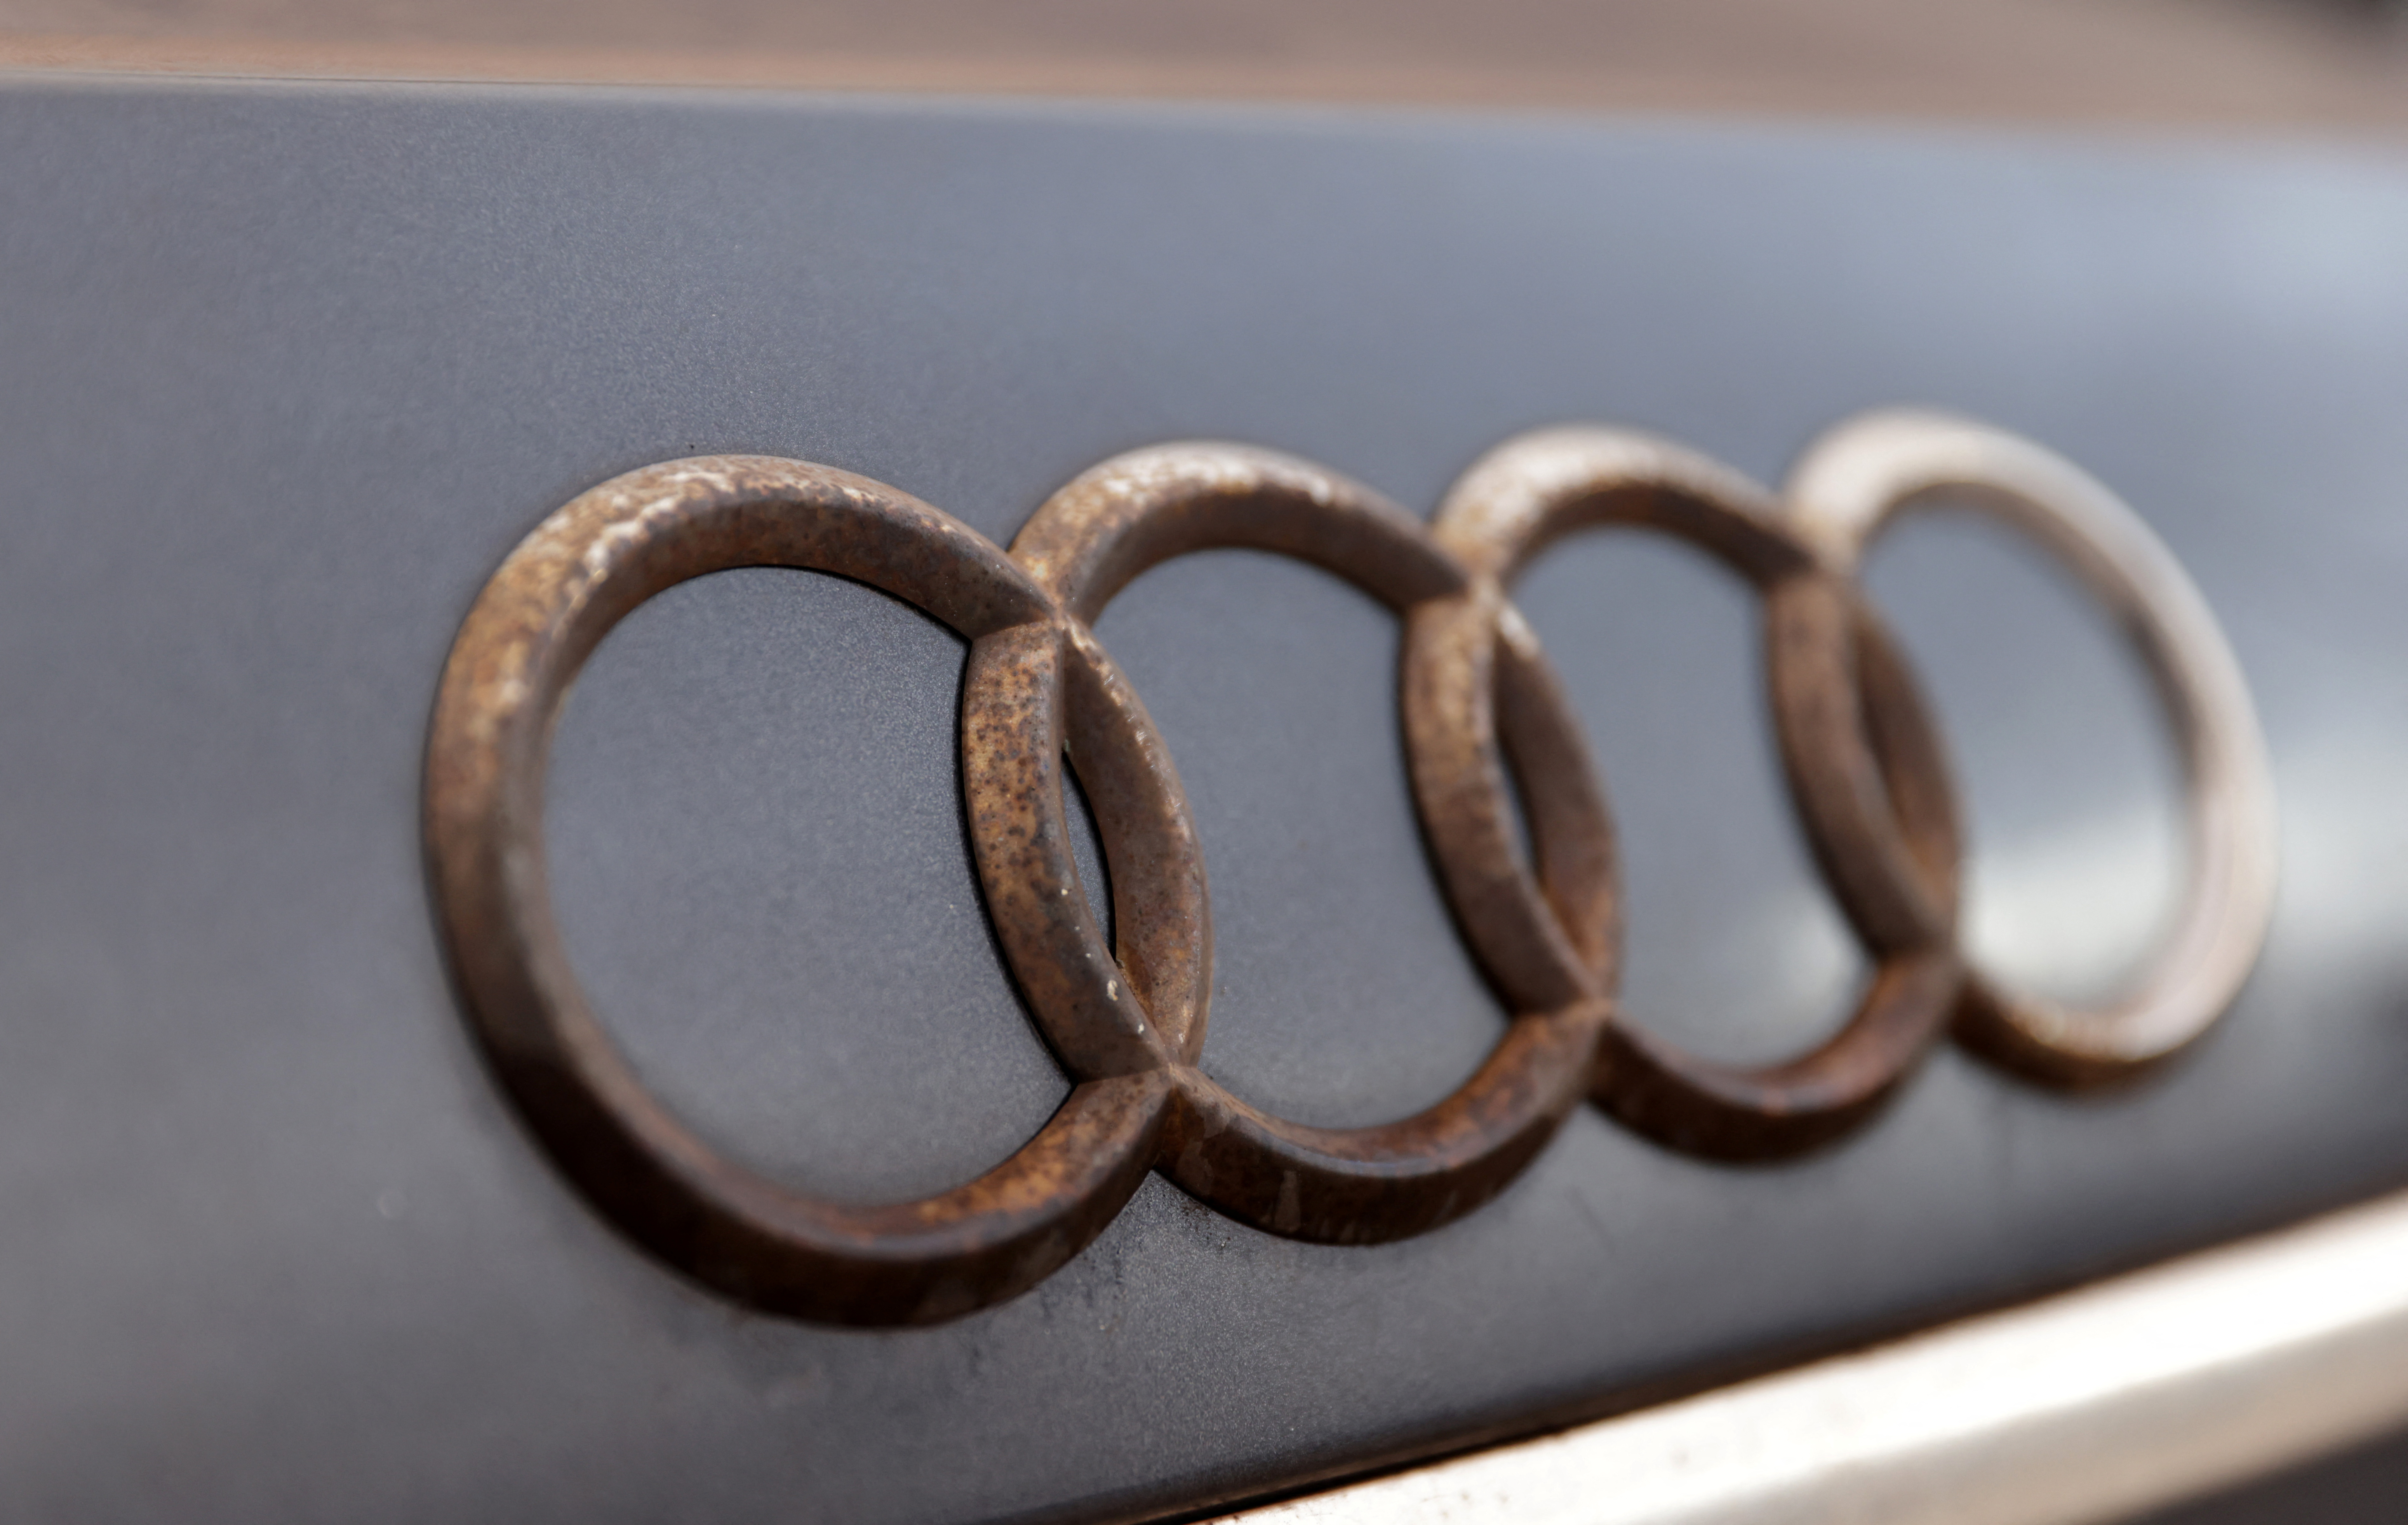 Rusty Audi logo is seen on car waste in Zenica